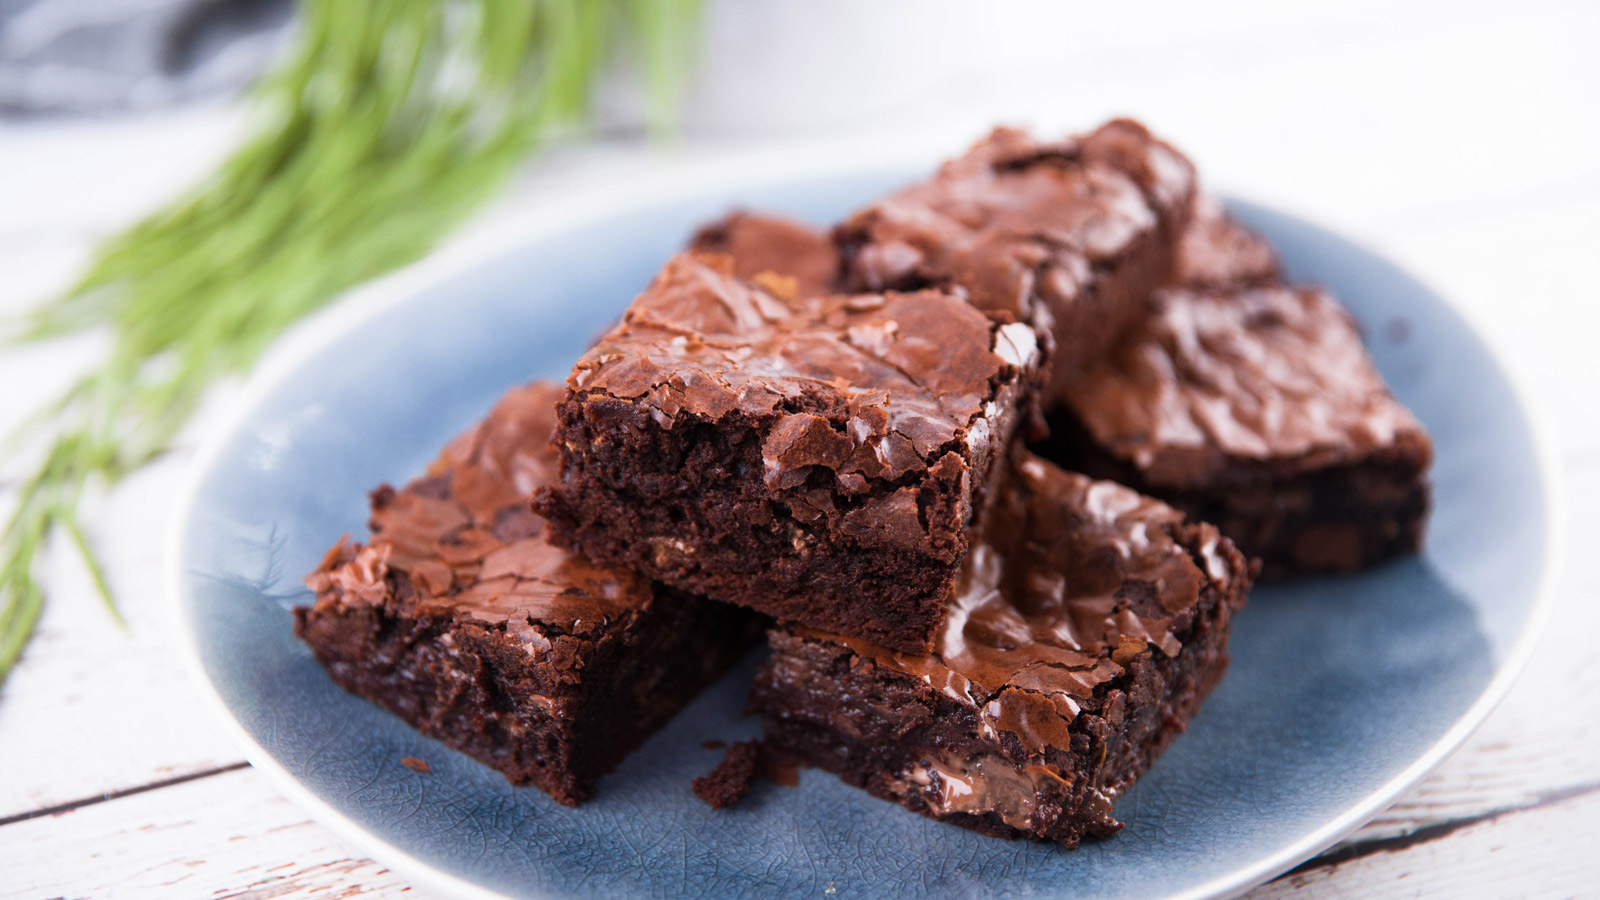 Brownies de chocolate al estilo Kirsten (Kirsten's Chocolate Brownies) -  Kirsten Tibballs - Receta - Canal Cocina